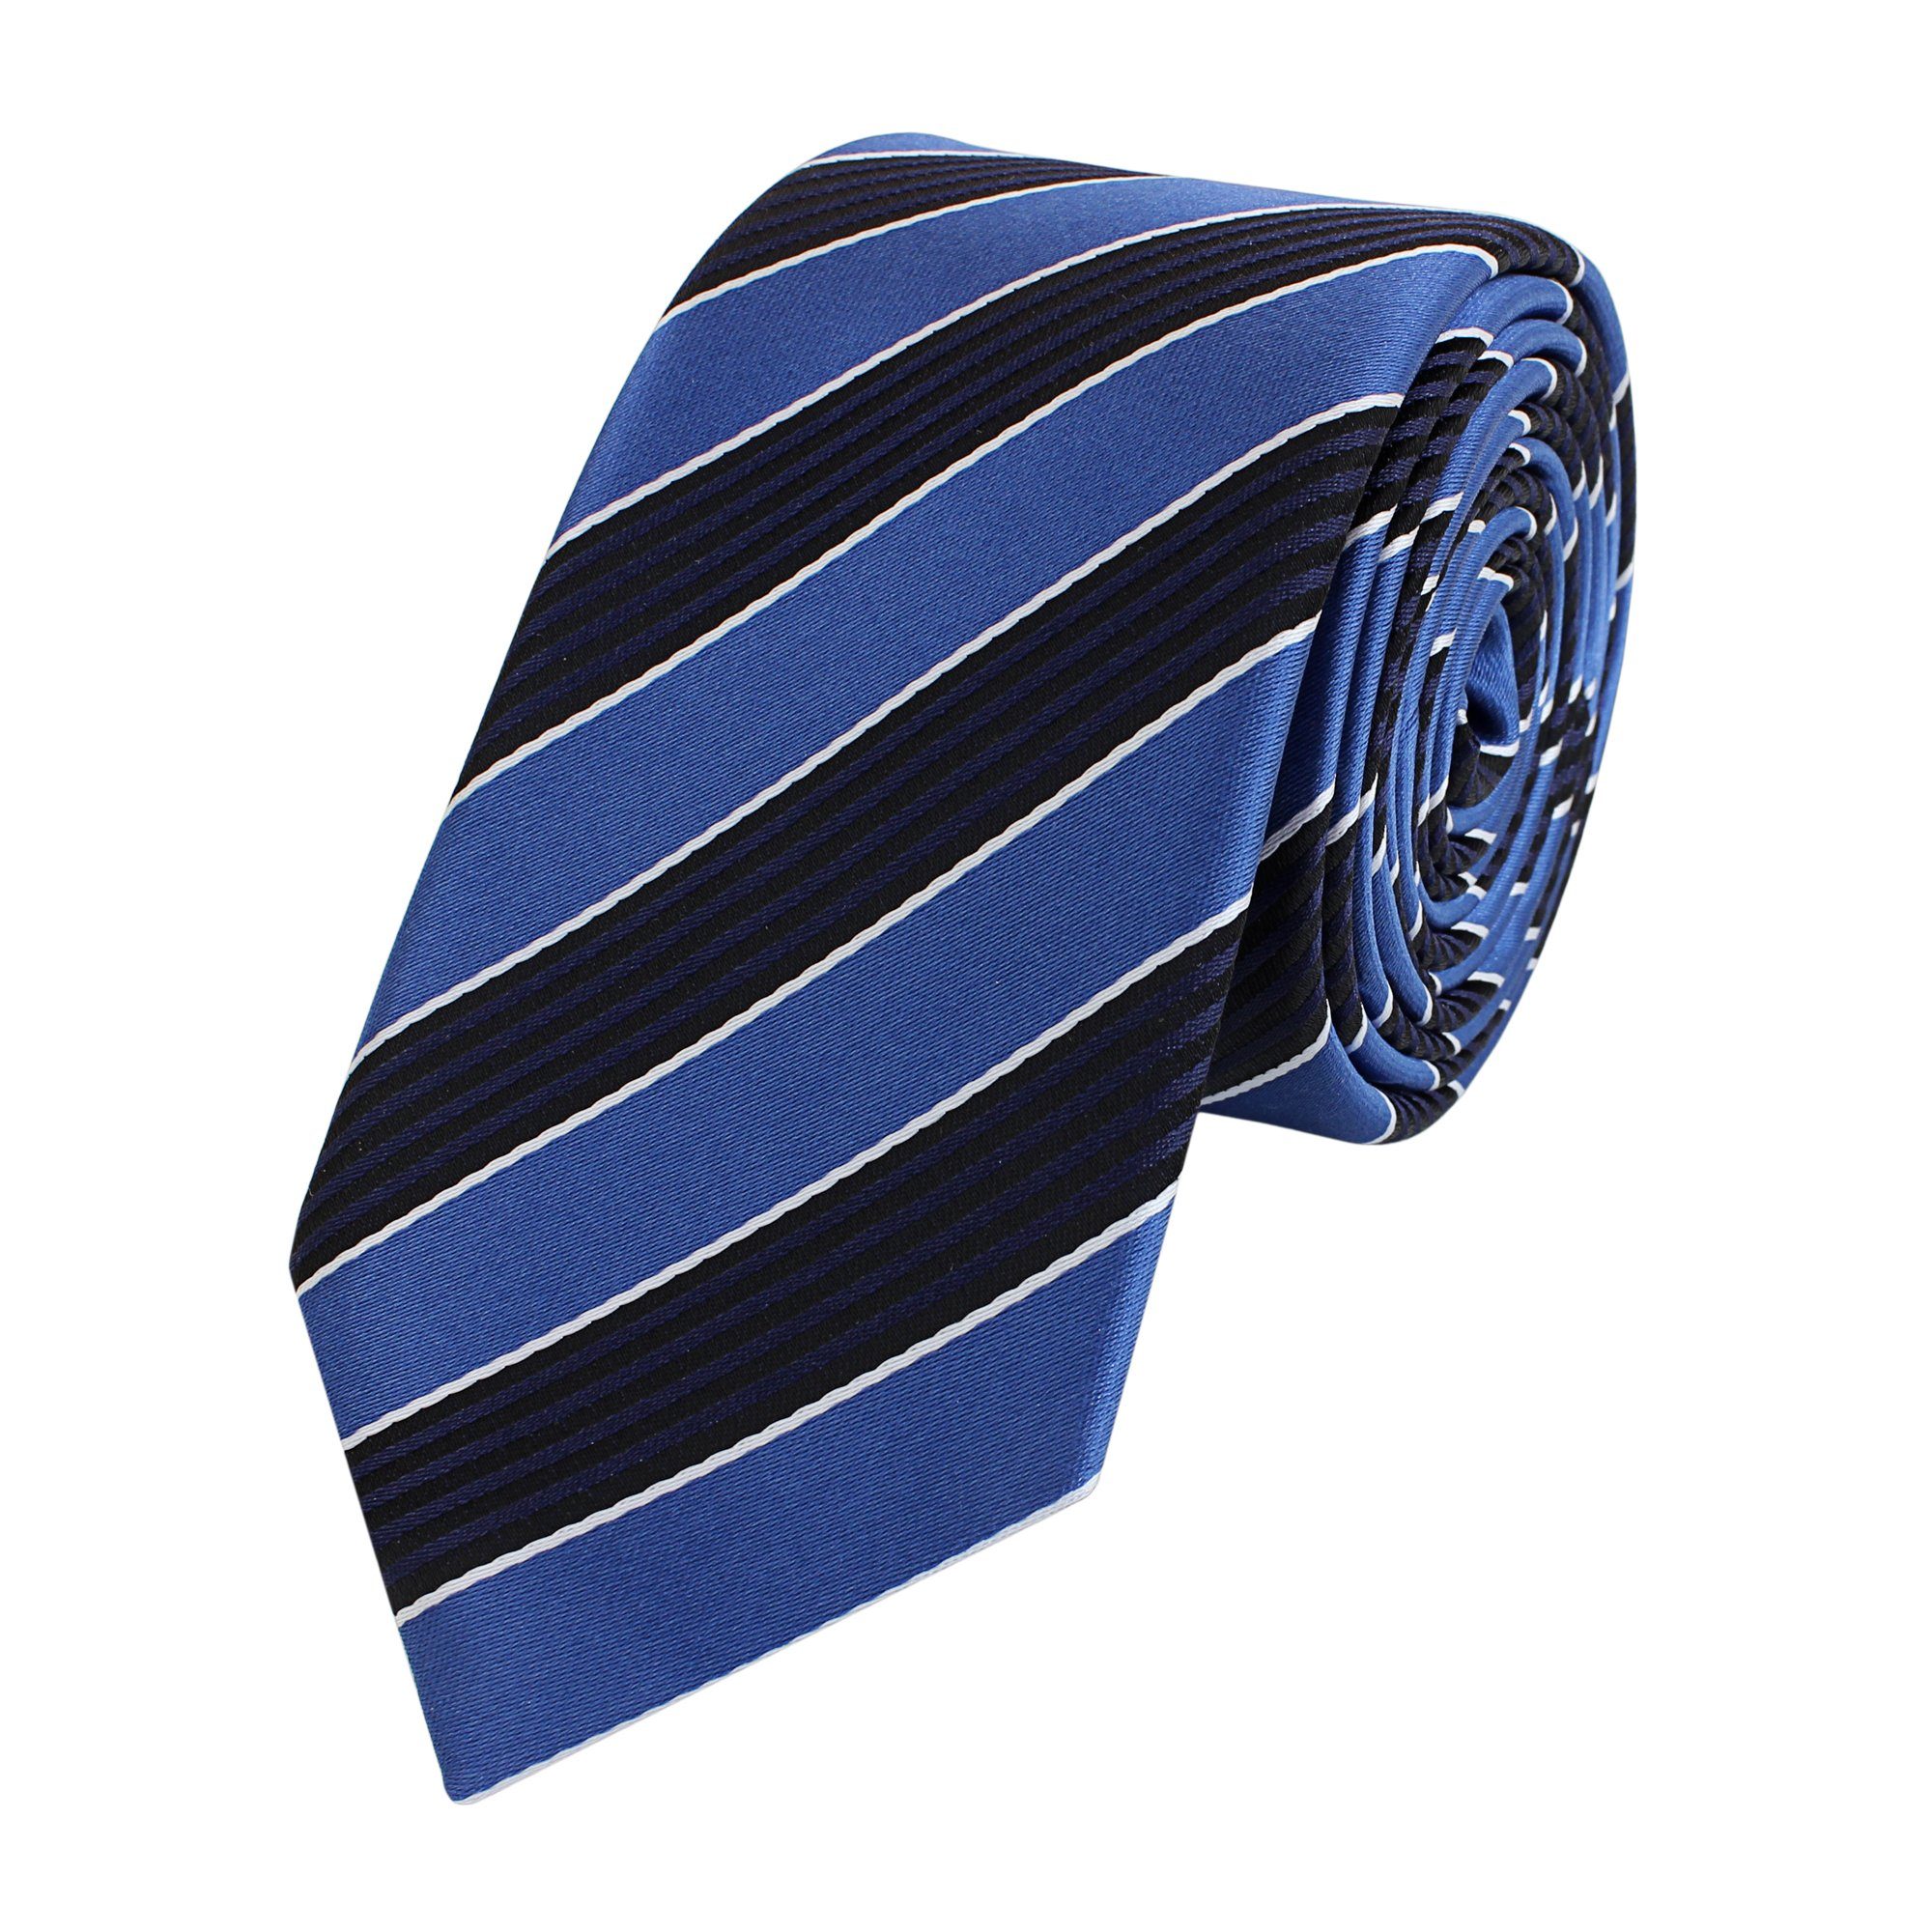 Fabio Farini Krawatte Herren Krawatte Blautöne - verschiedene Blaue Männer Schlips in 6cm (ohne Box, Gestreift) Schmal (6cm), Blau Schwarz Striefen - Cordon Bleu/Noir/Blanc